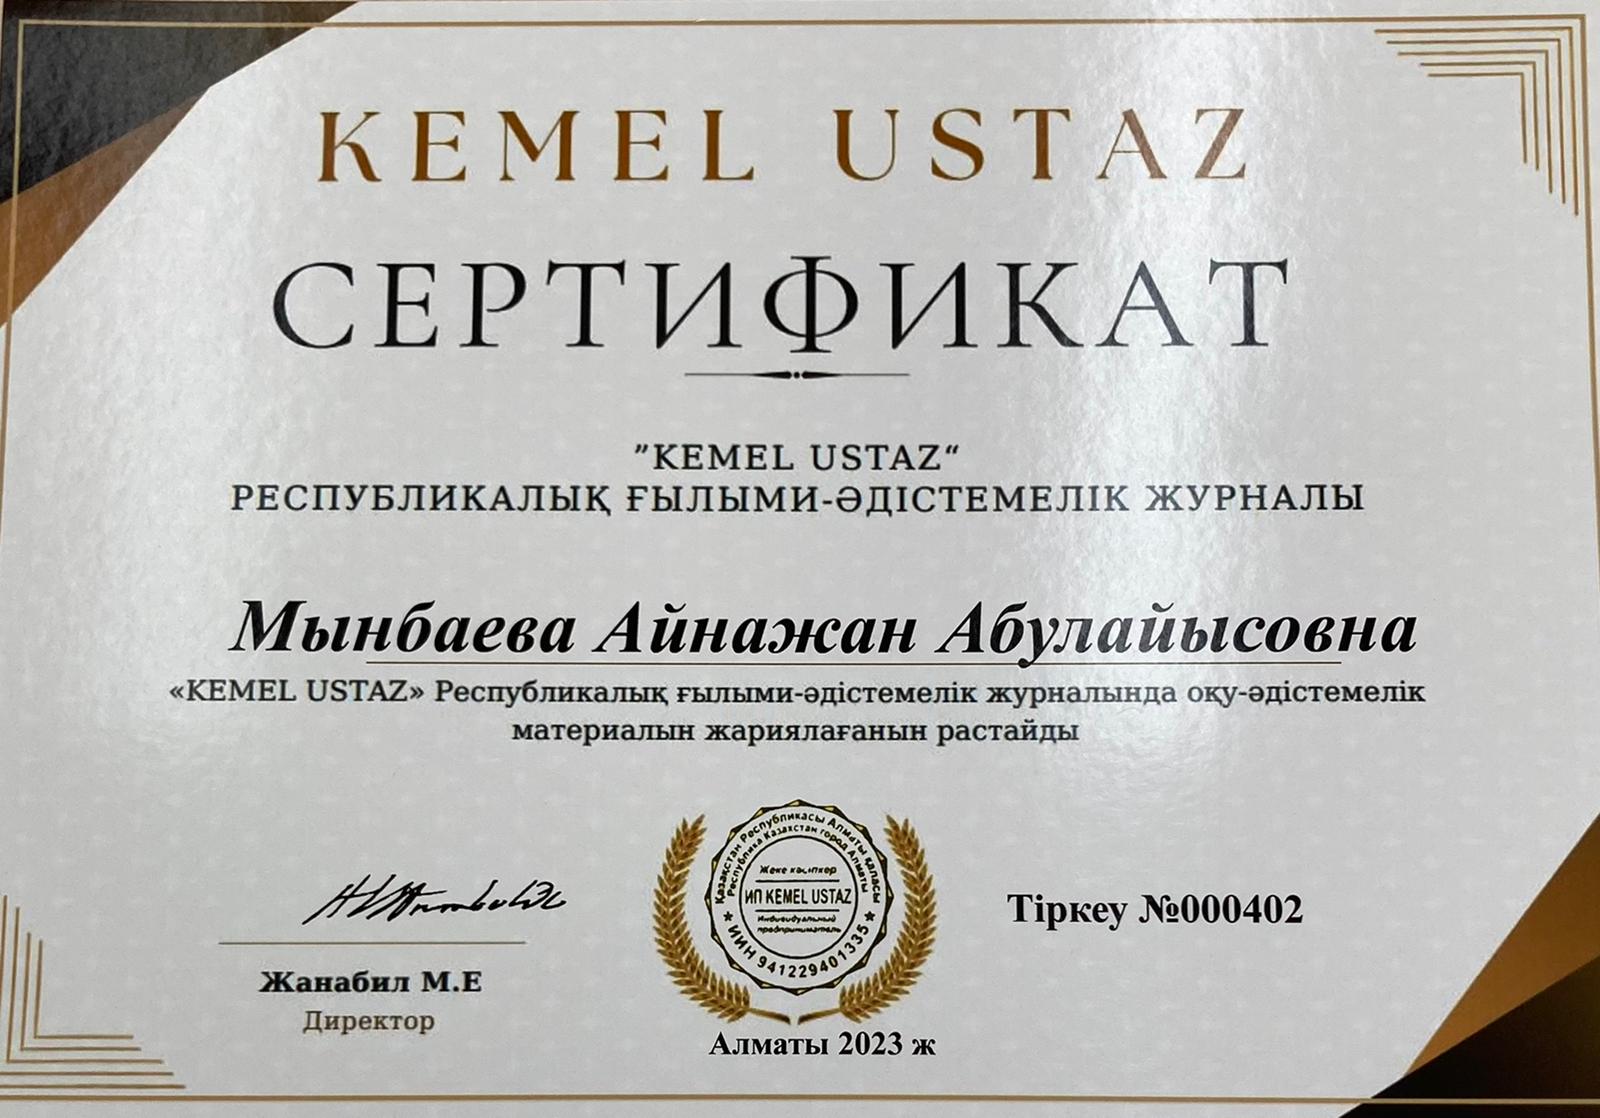 Қазақ тілі мен әдебиеті пәні мұғалімі Мынбаева Айнажанның «Kemel Ustas» Республикалық ғылыми-әдістемелік журнальна «Тауелсізідік- ел тірегі» атты эссе